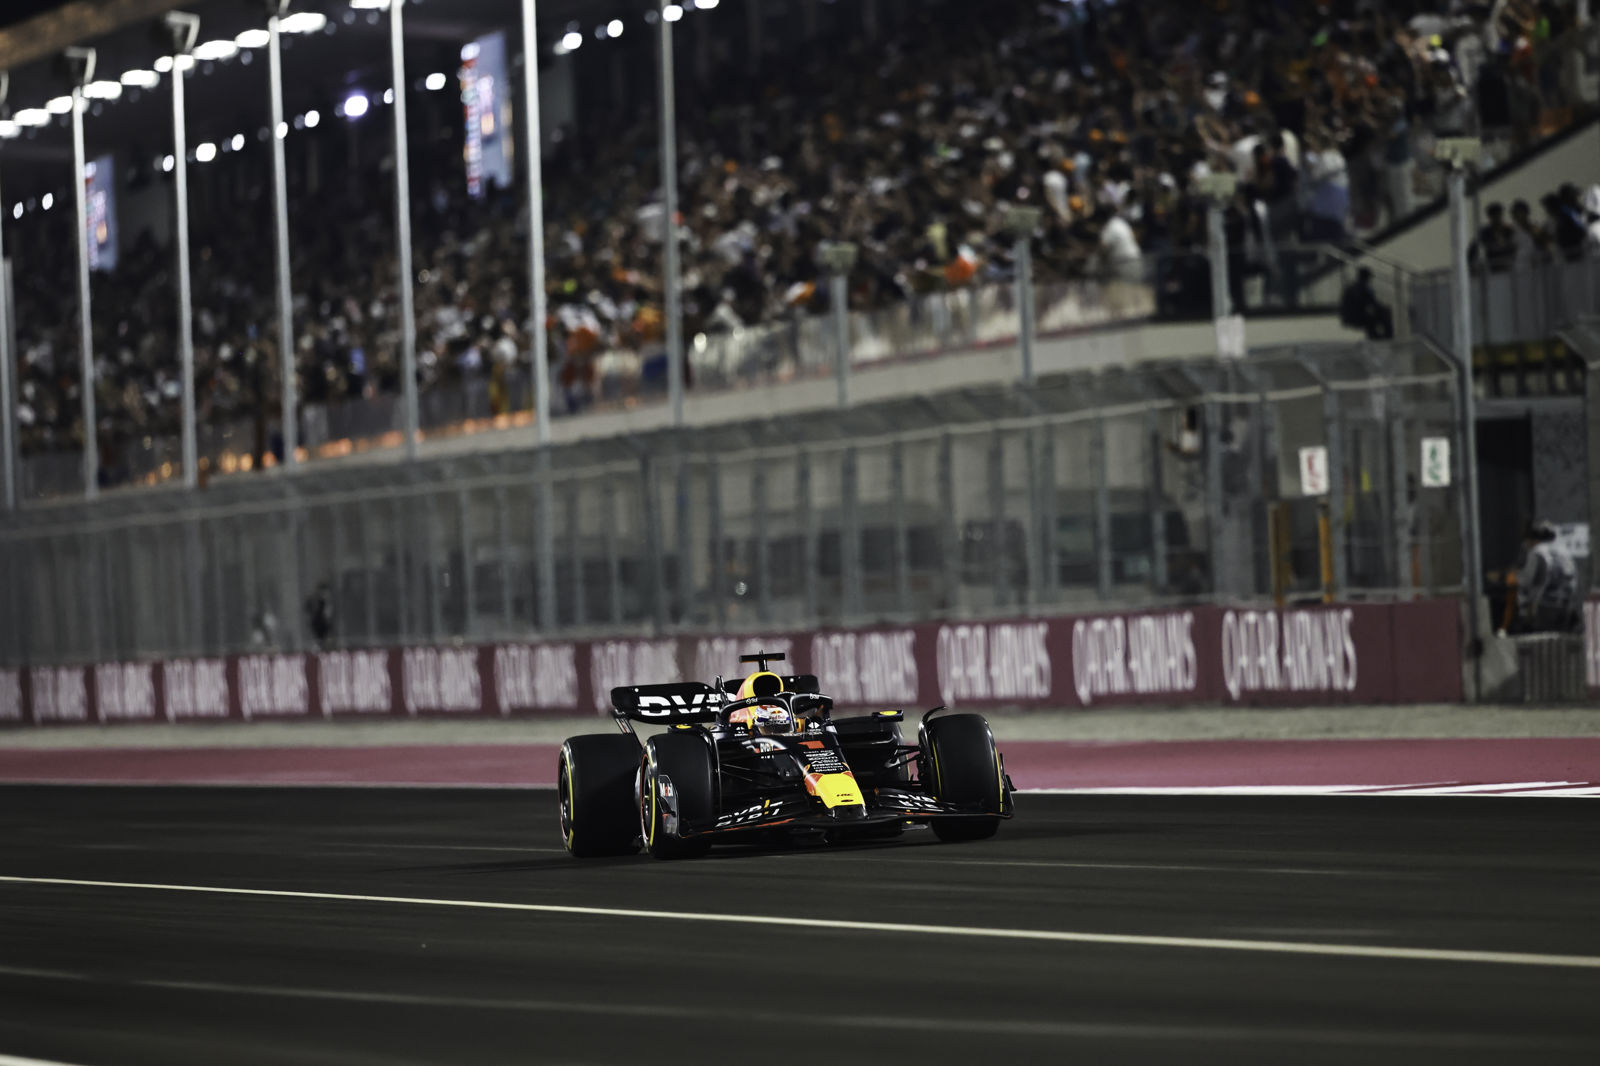 Deluxe combinatiereis F1 Qatar&F1 Abu Dhabi, 12 dagen